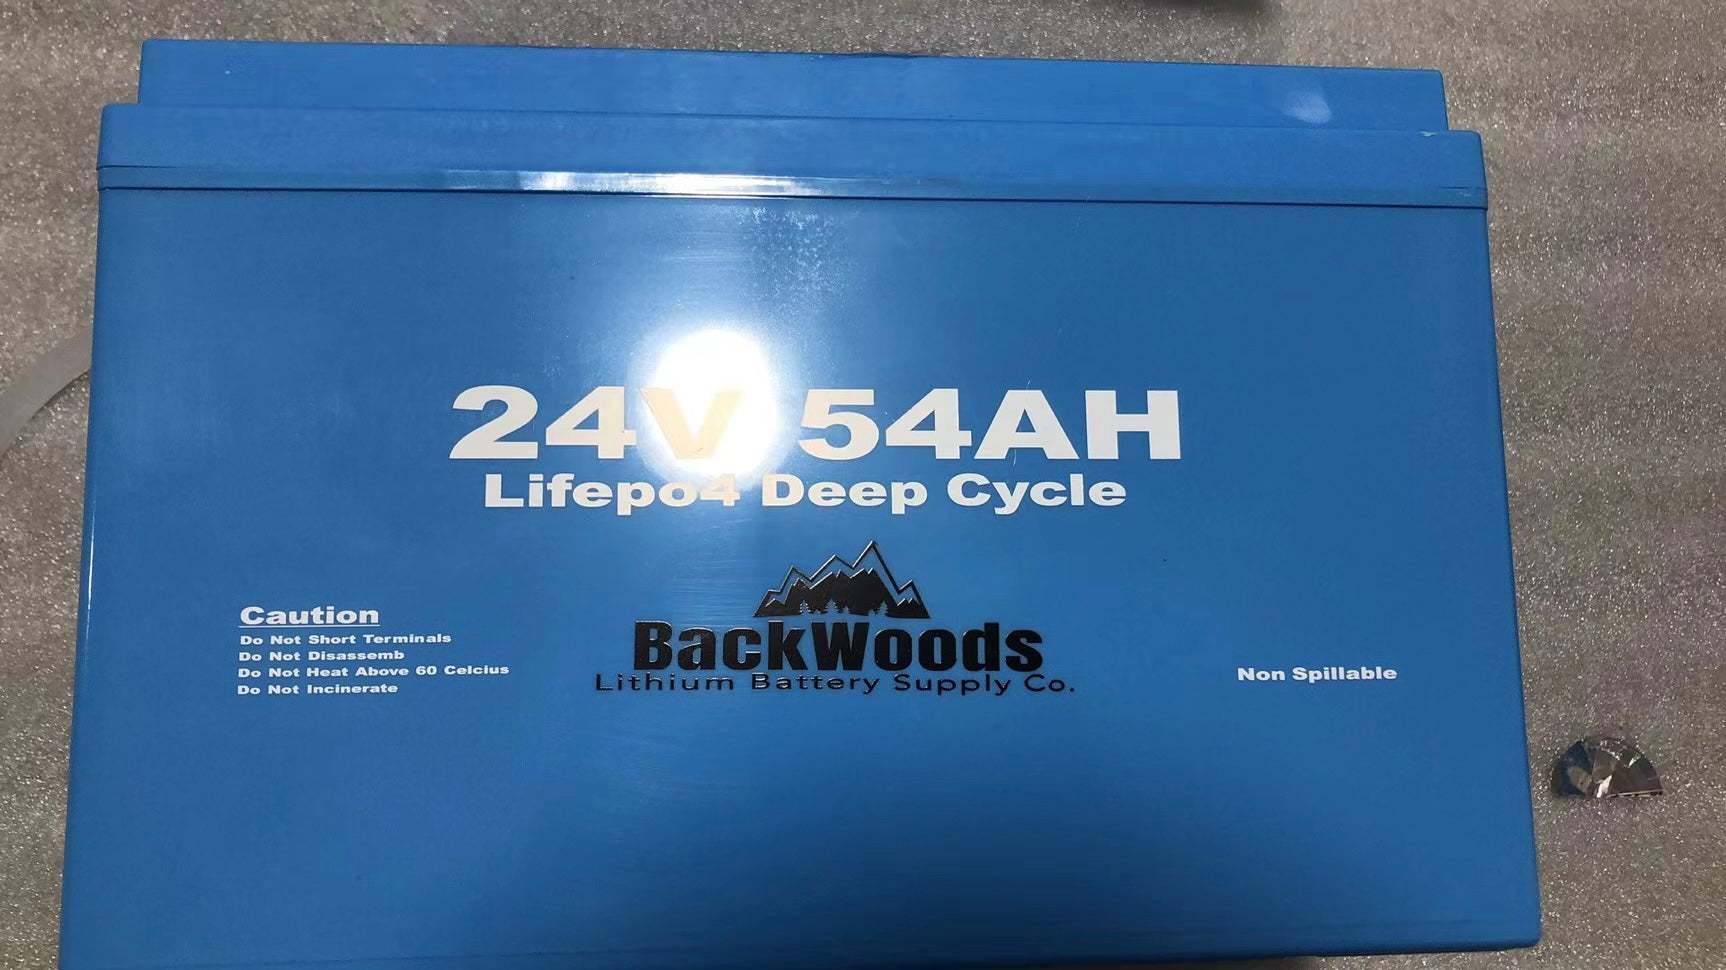 Backwoods 24V 54AH Deep Cycle LIFEPO4 Single Battery